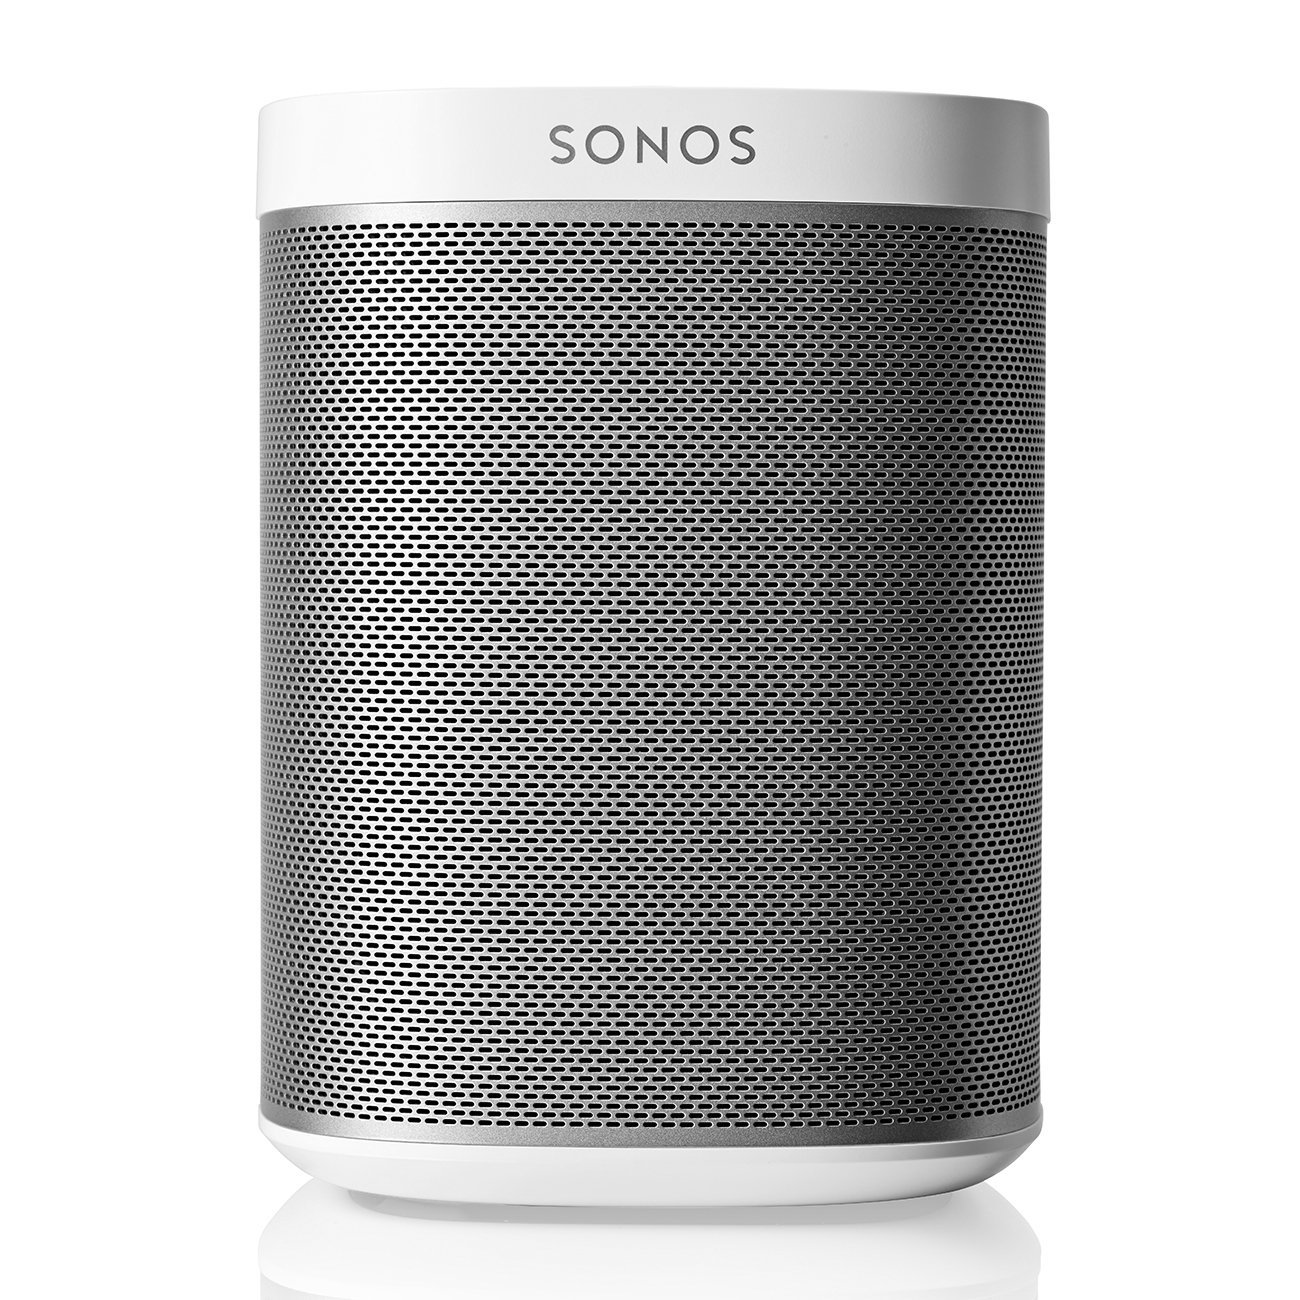 Copy of Copy of Copy of Copy of Sonos